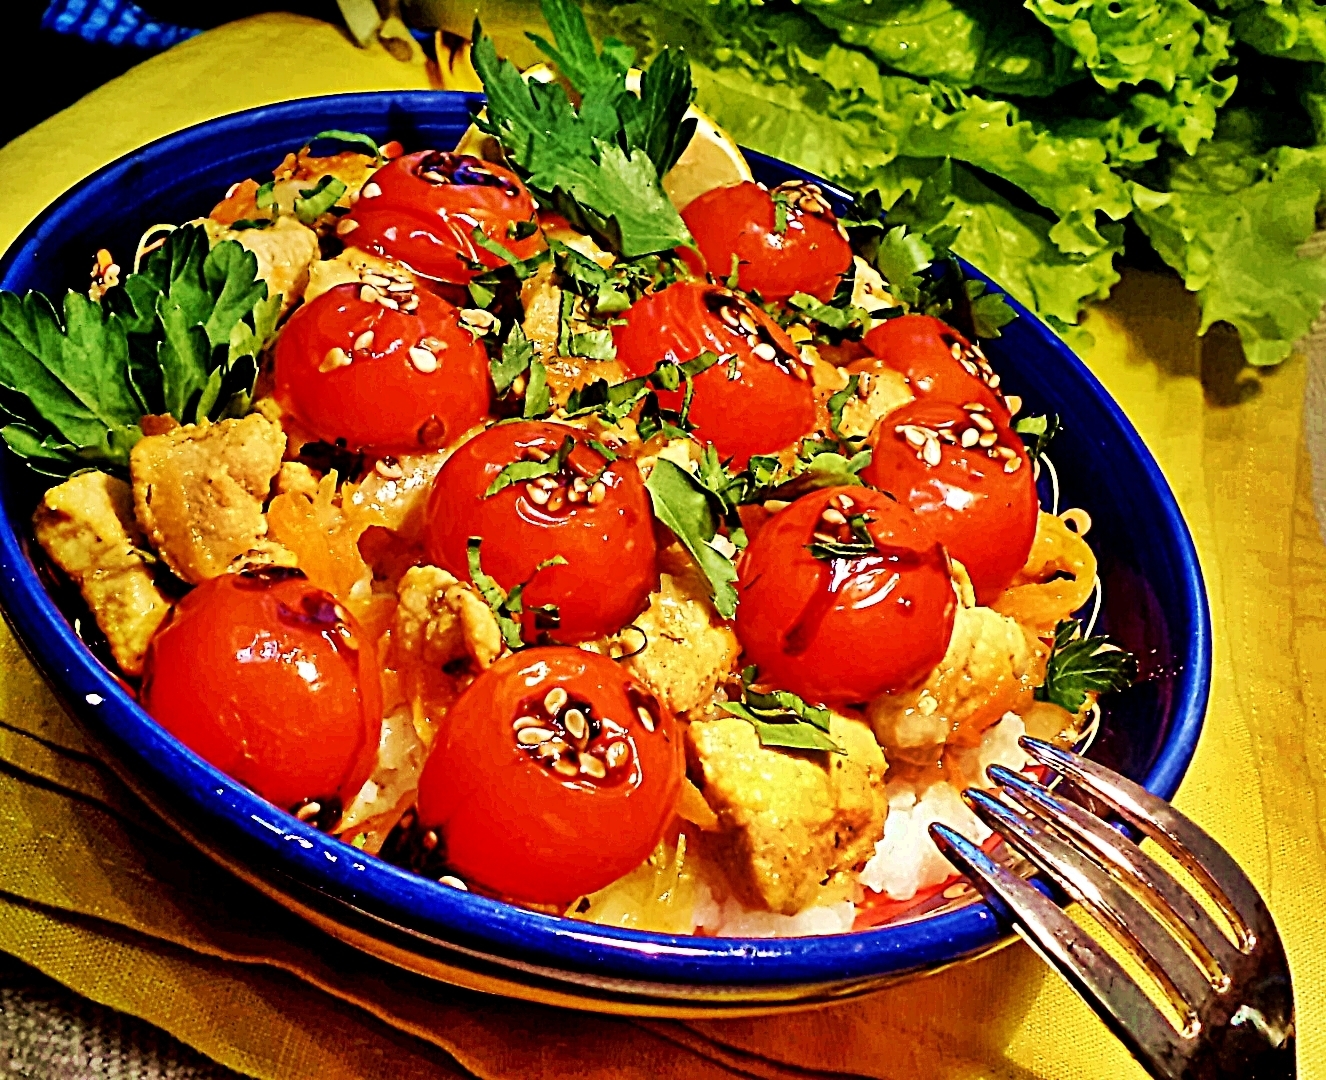 Фото к рецепту: Плов "праздничный салют" к 23 февраля со свининой и карамелизированными помидорками черри.